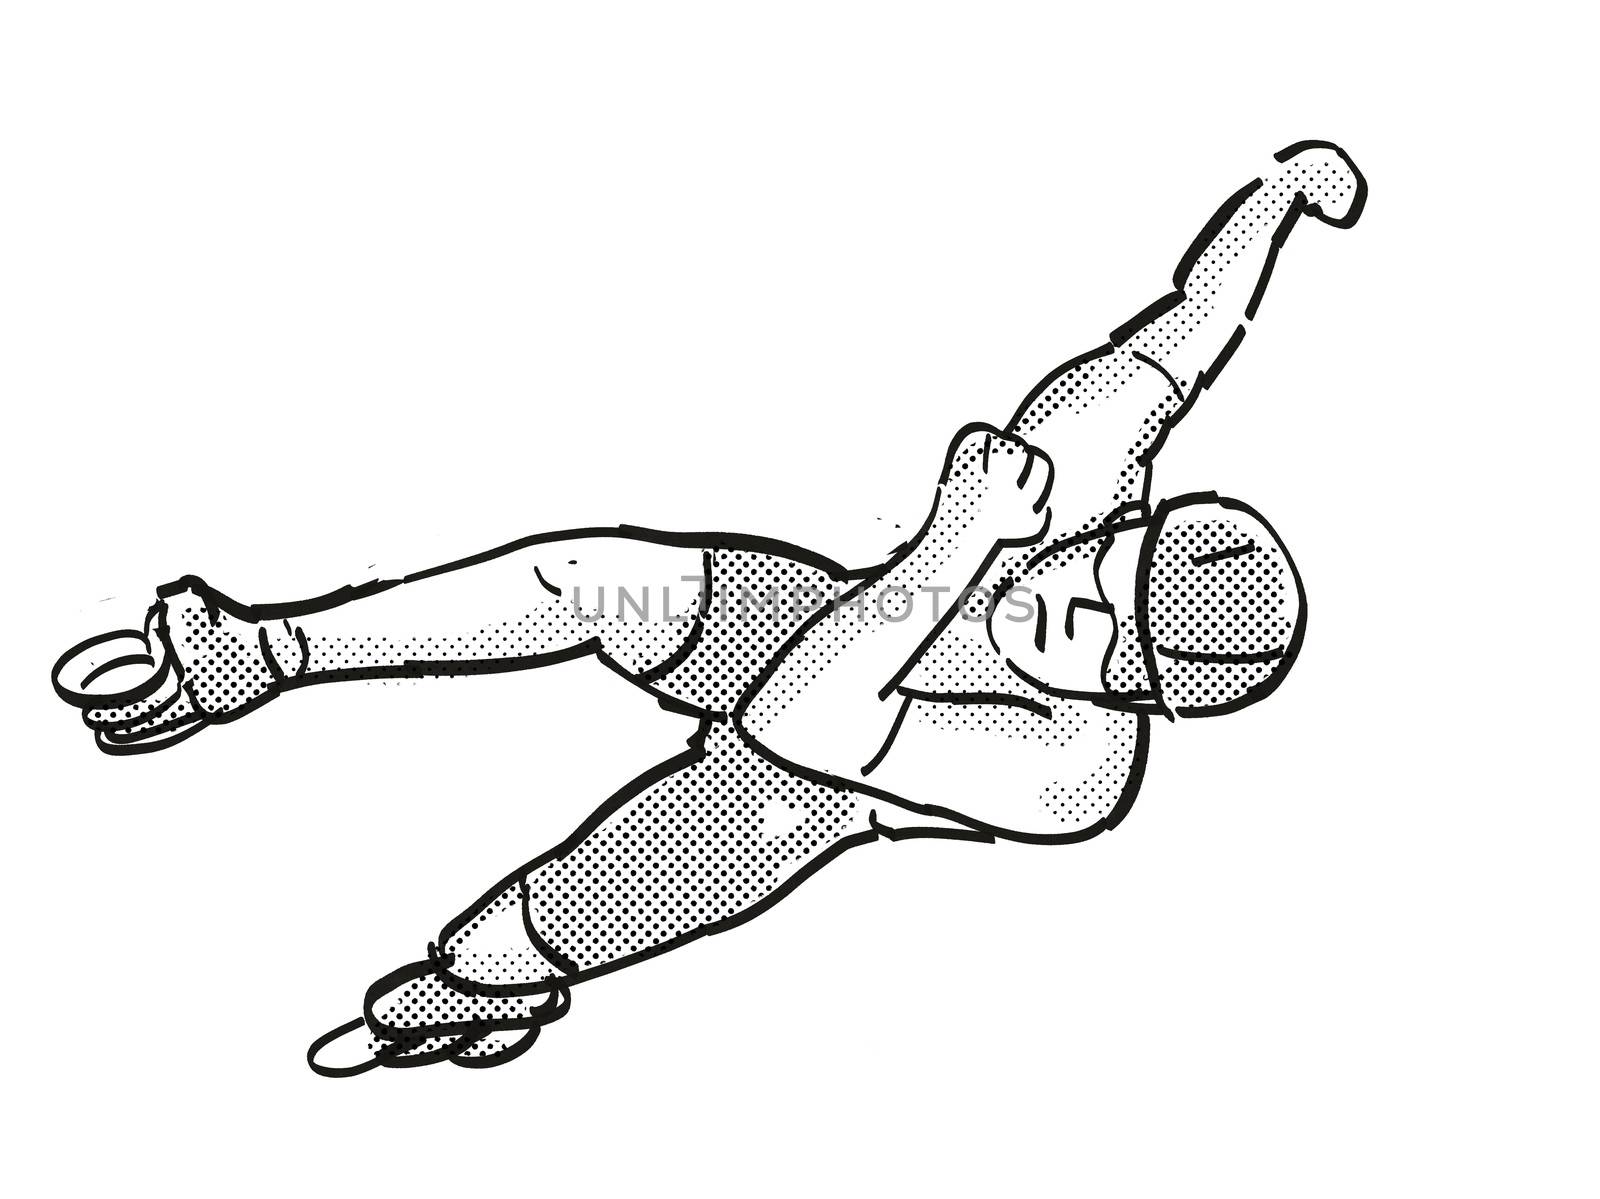 athlete skater inline speed skating Cartoon Retro Drawing by patrimonio